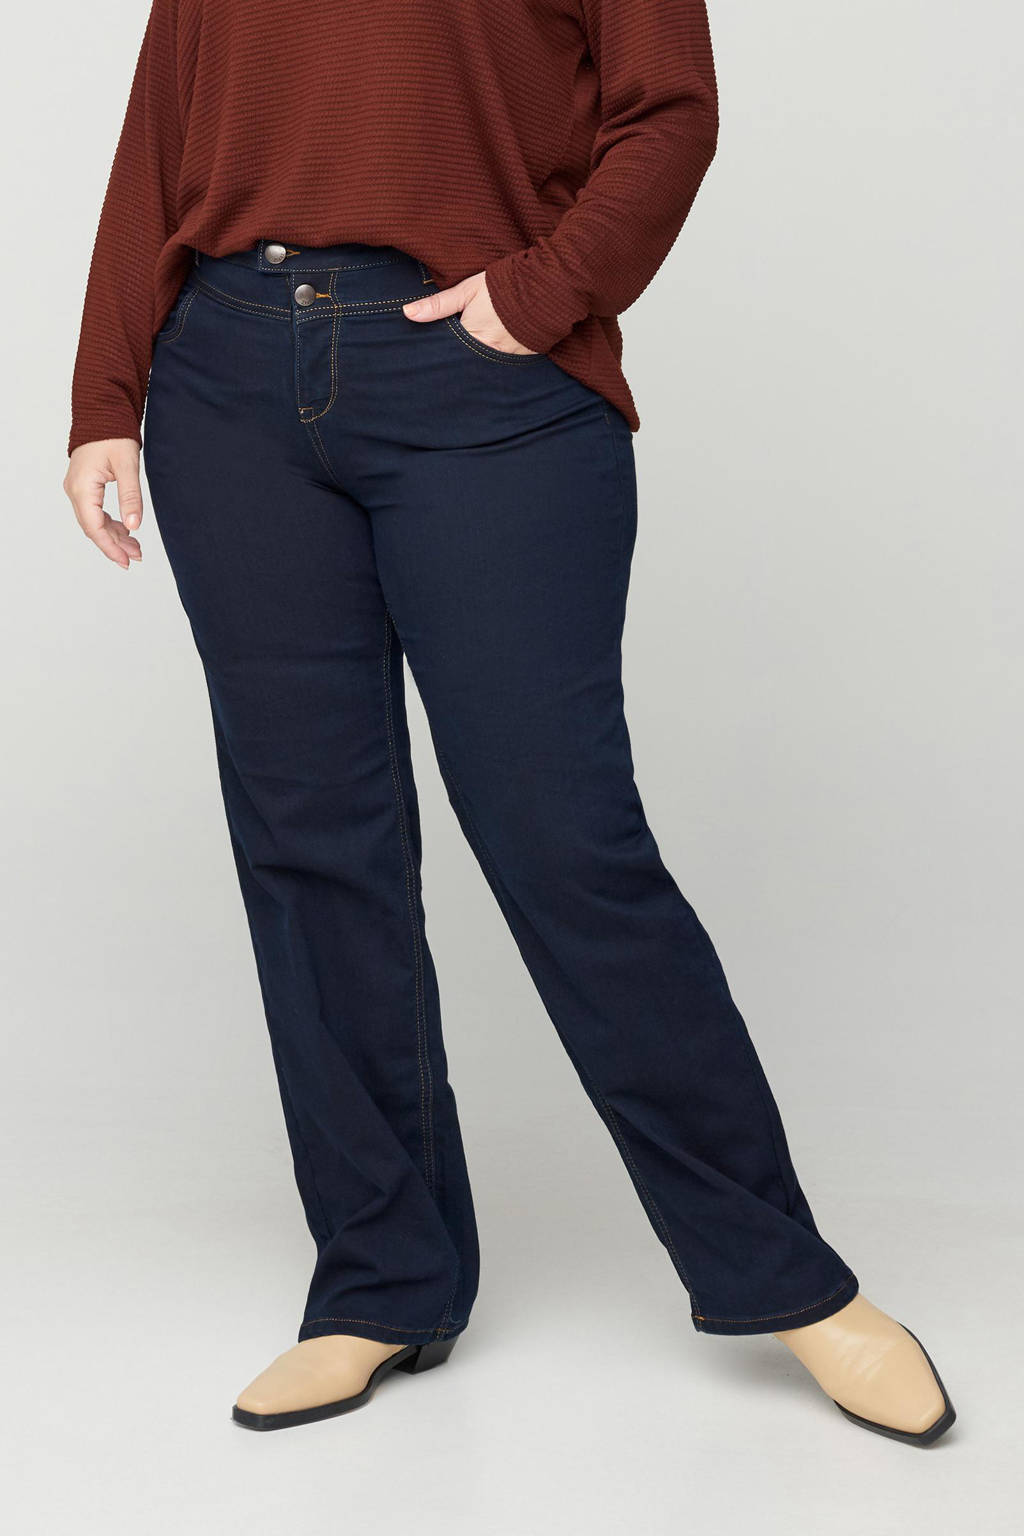 Konijn slecht schuif Zizzi high waist straight fit jeans Gemma dark denim lengtemaat 32 | wehkamp